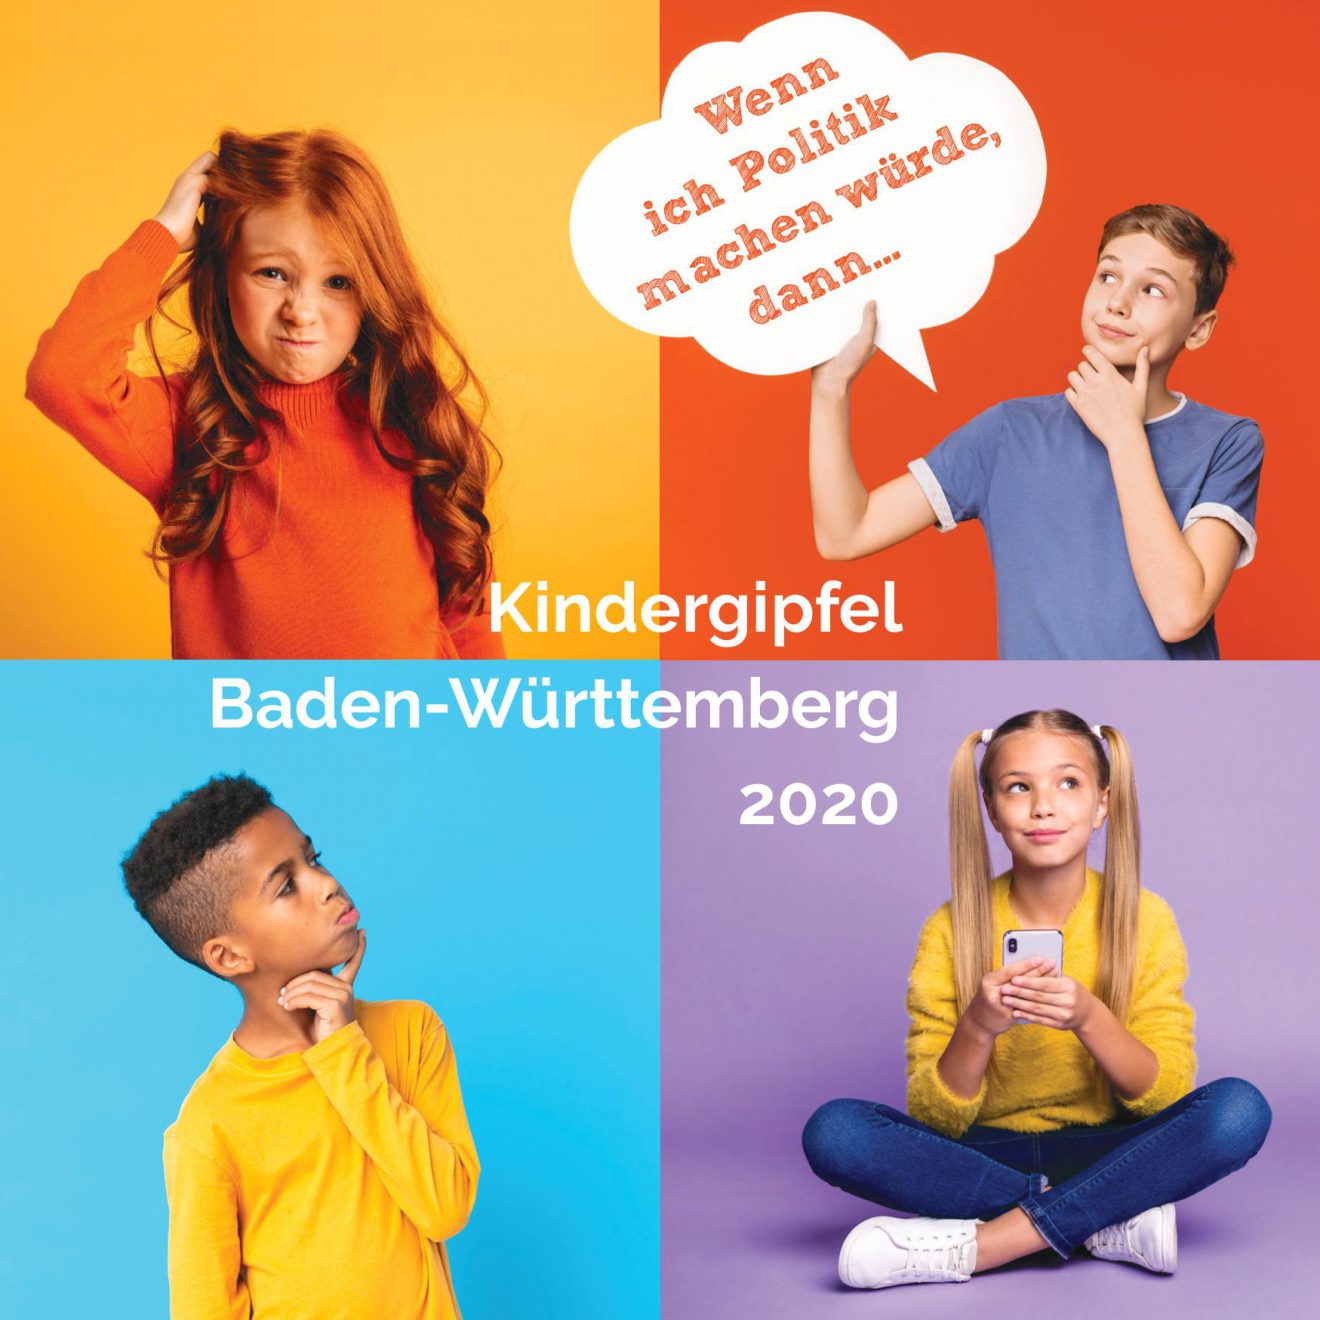 Kindergipfel Baden-Württemberg